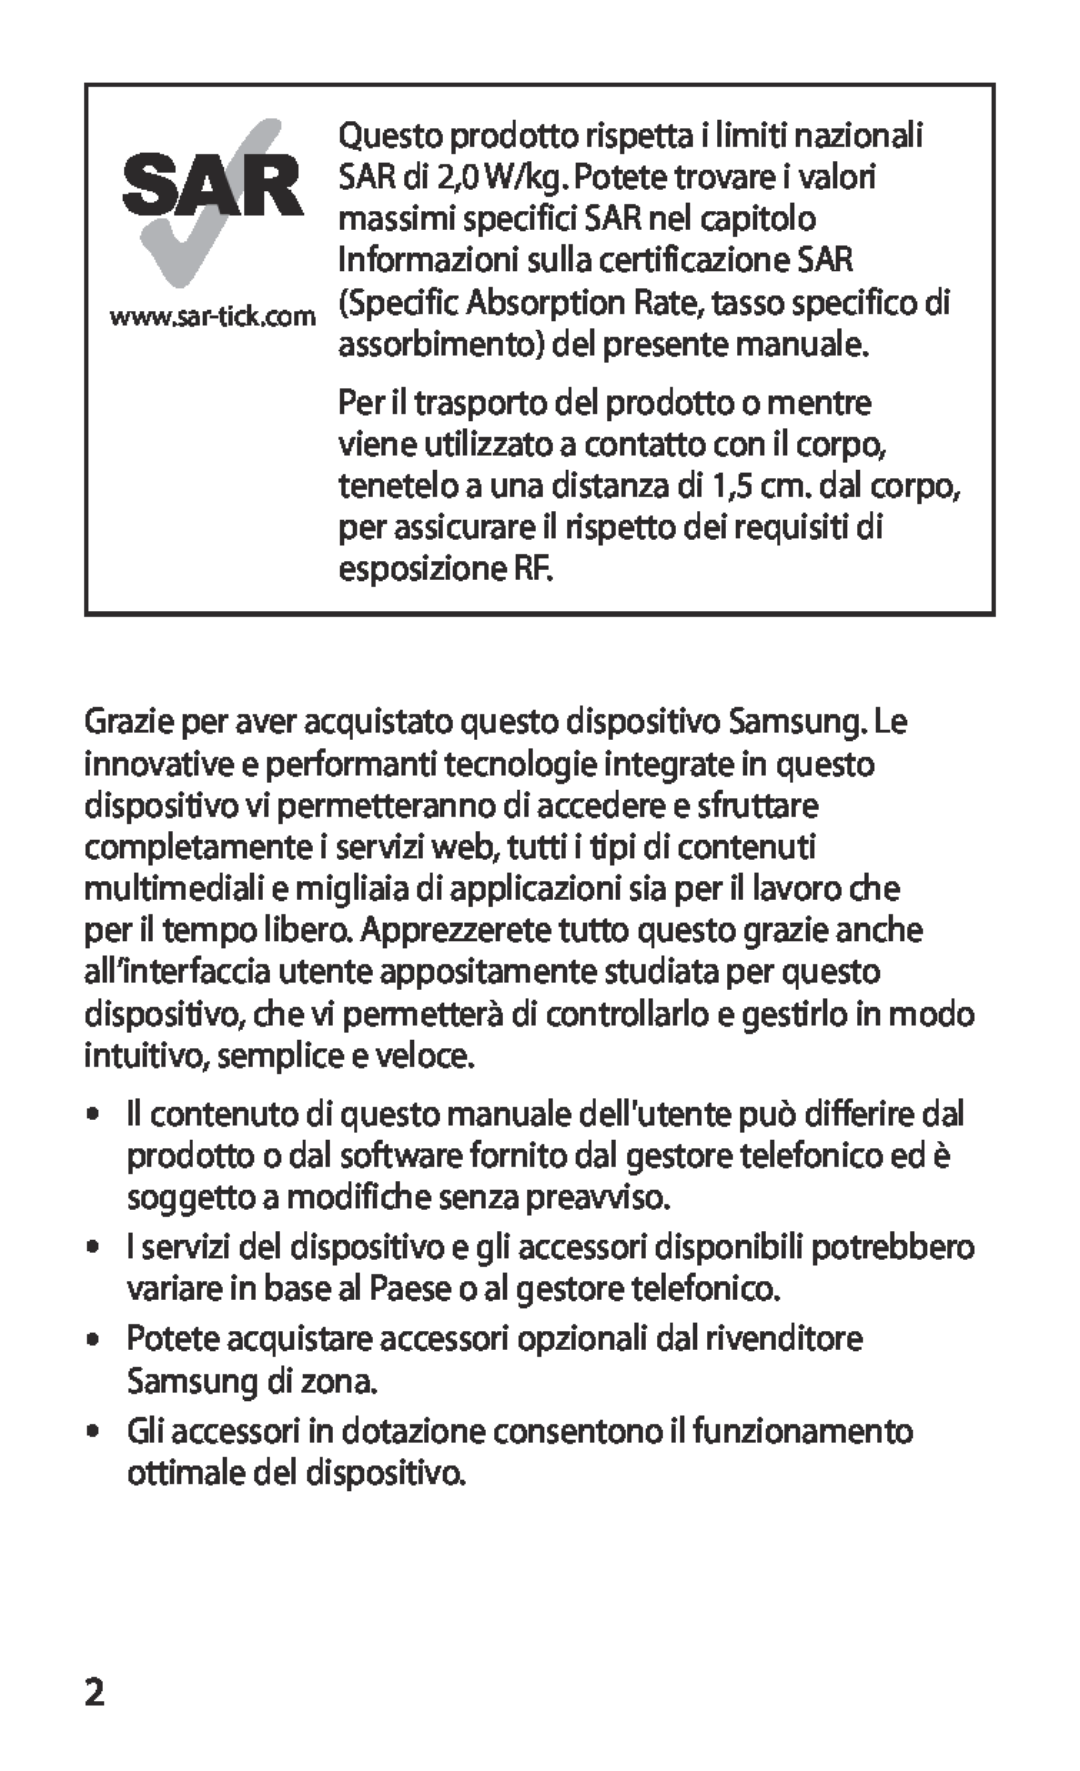 Samsung GT-S7530EAETIM, GT-S7530EAEITV manual Potete acquistare accessori opzionali dal rivenditore Samsung di zona 